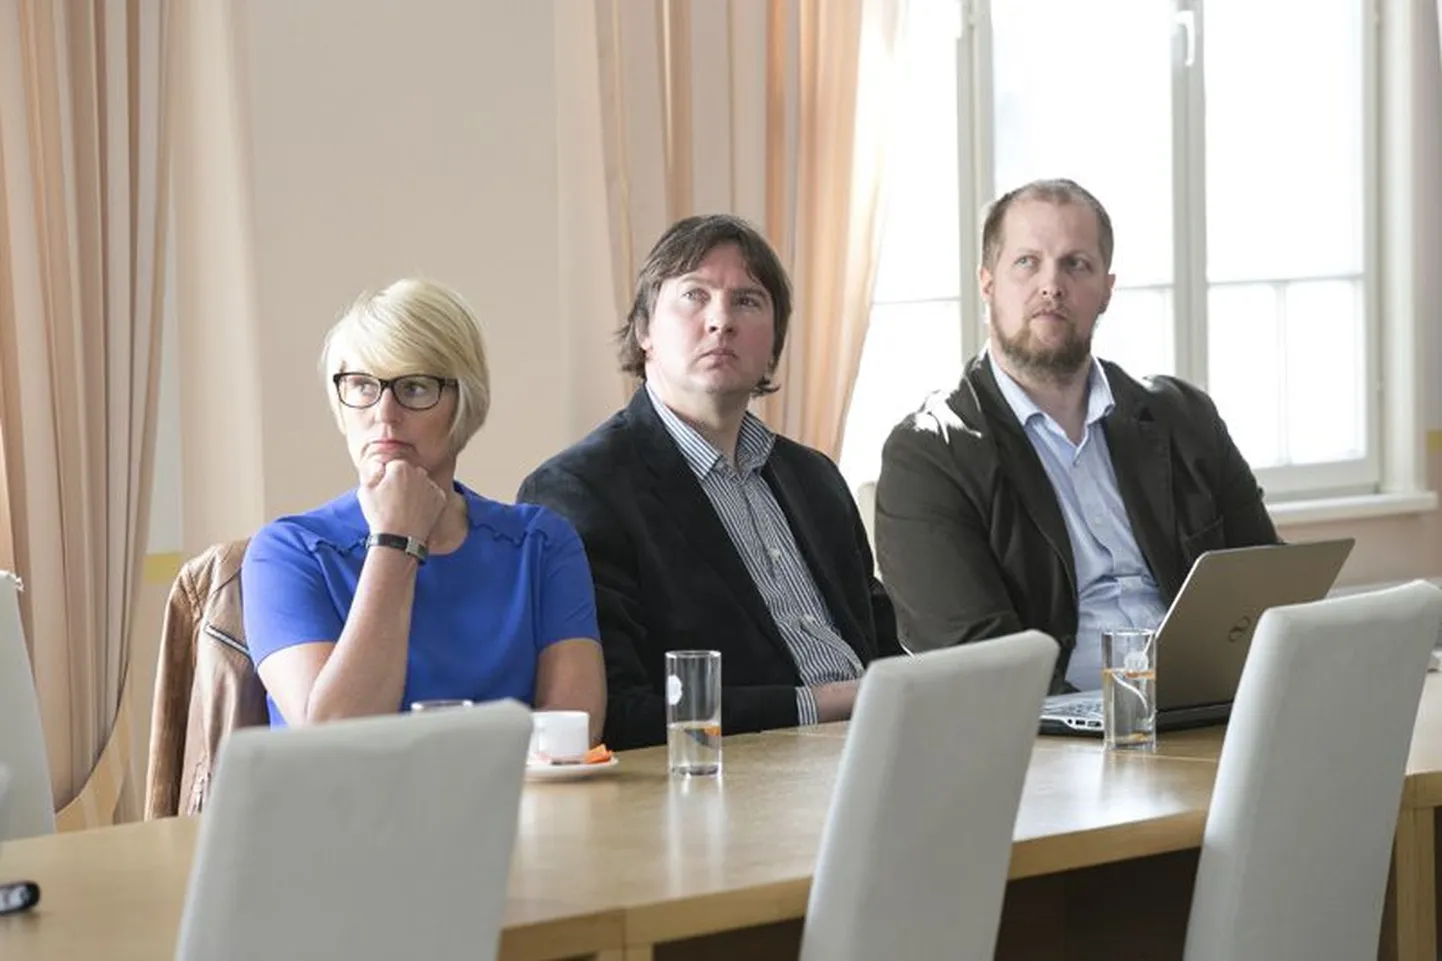 Kohtumine tõi kokku erinevate elualade esindajad: Karin Rändla JELD-WENist (vasakul), Kuno Rooba Rakvere ametikoolist ja Sven Ratnik Lääne-Viru arenduskeskusest.